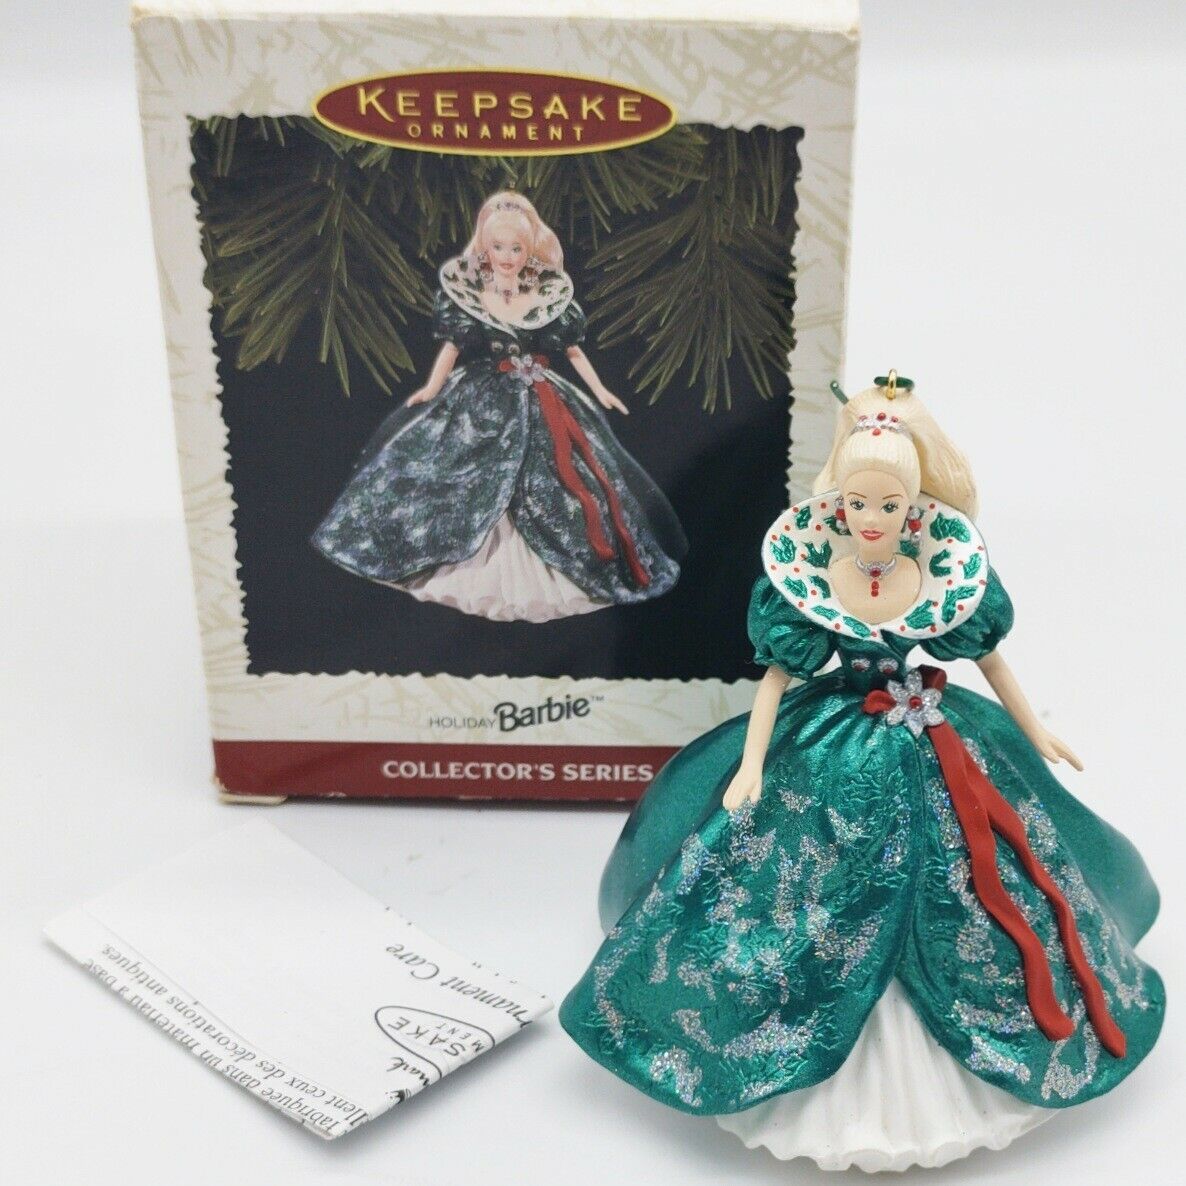 1995 Vintage Hallmark Keepsake Ornament Holiday Barbie Series 3 